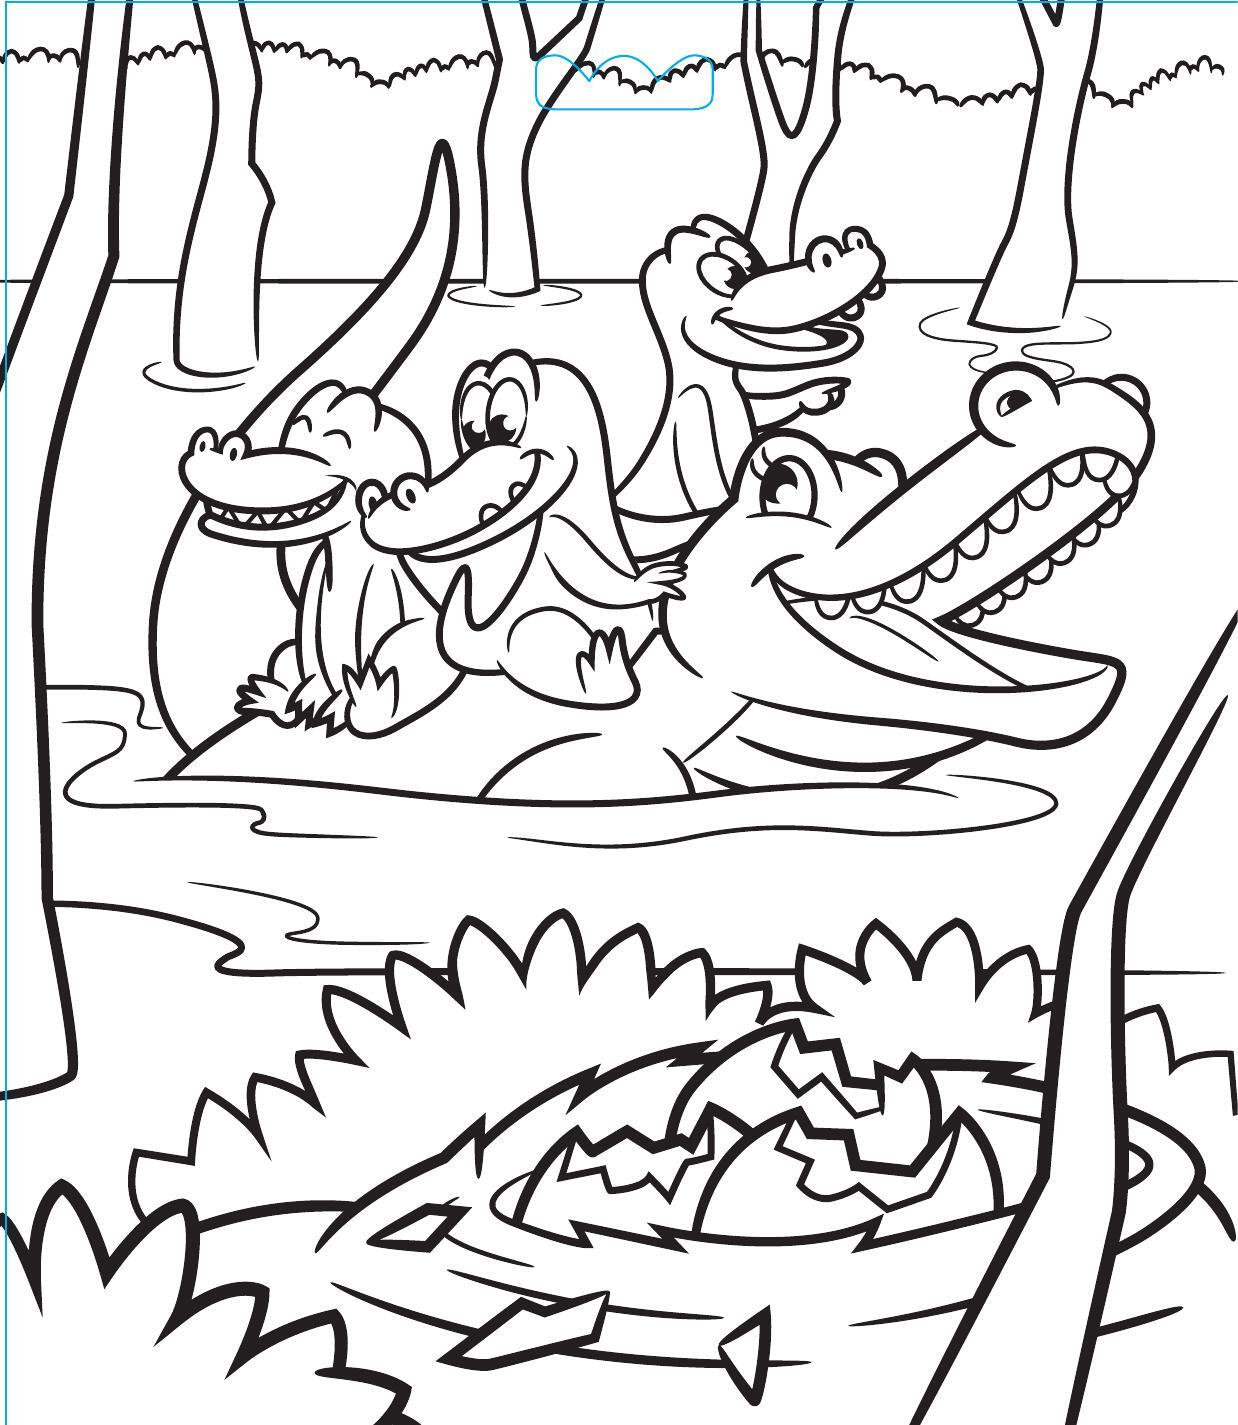 Alligator Family